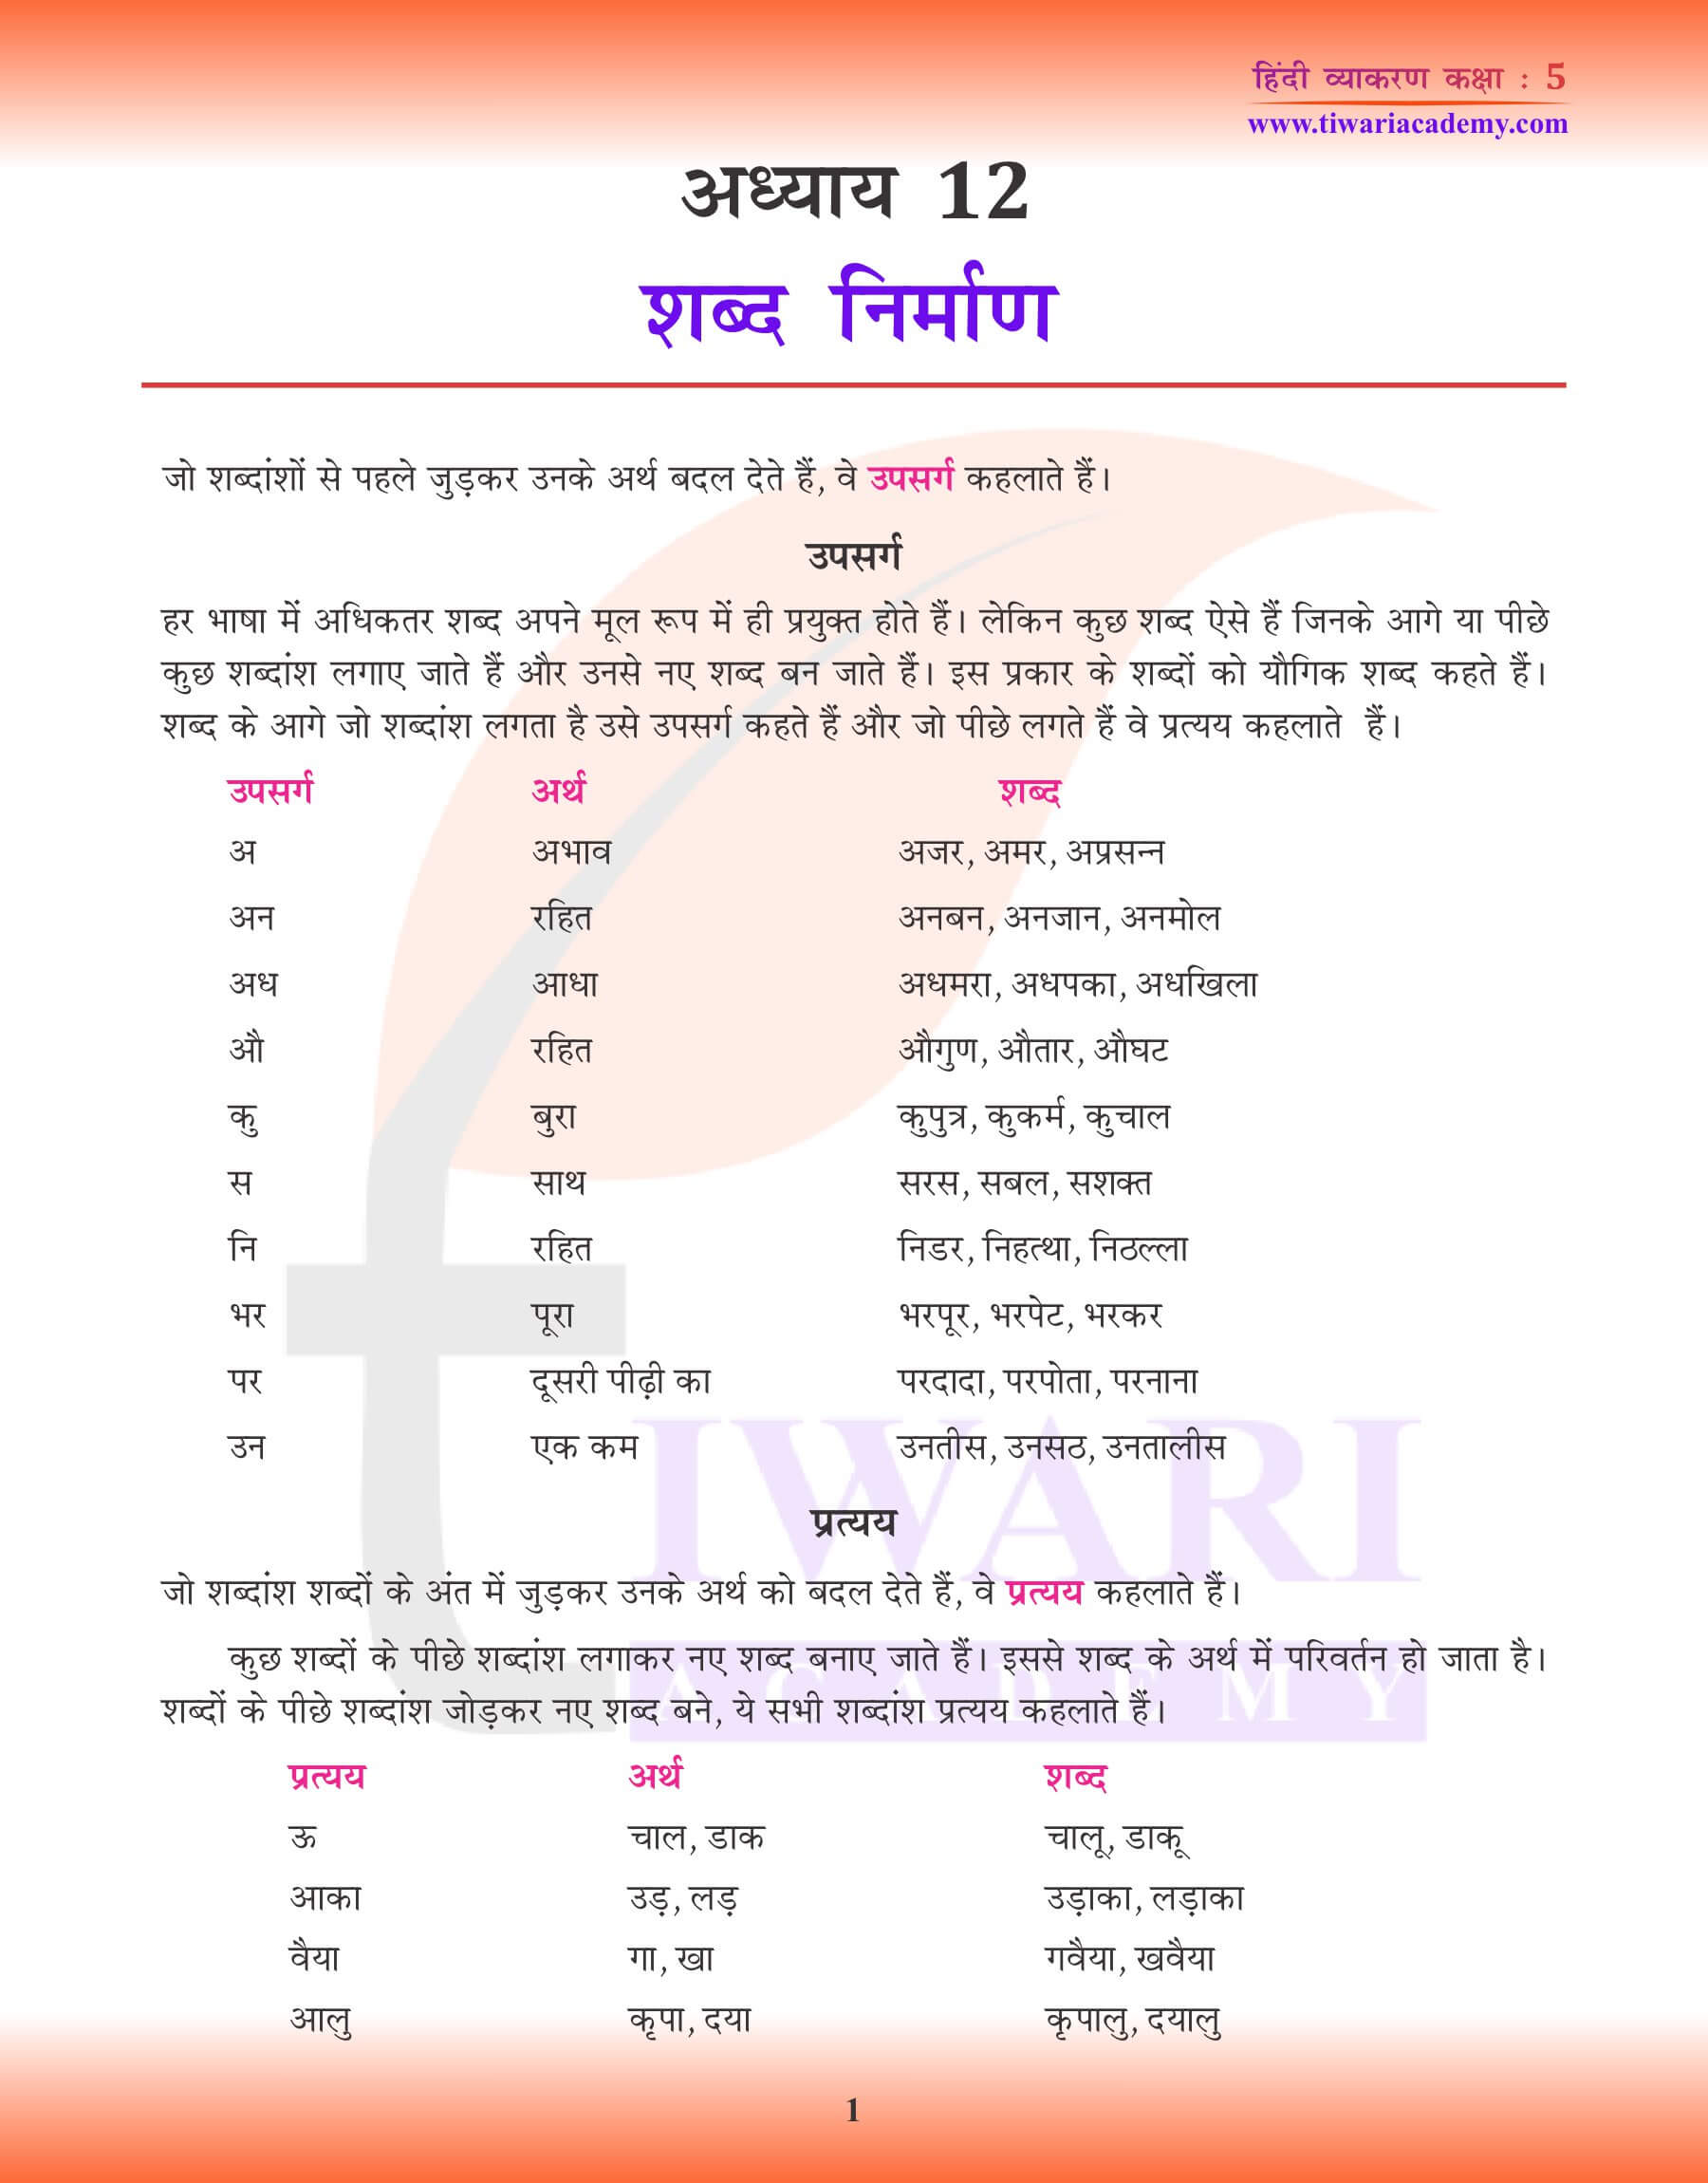 कक्षा 5 हिंदी व्याकरण में शब्द निर्माण